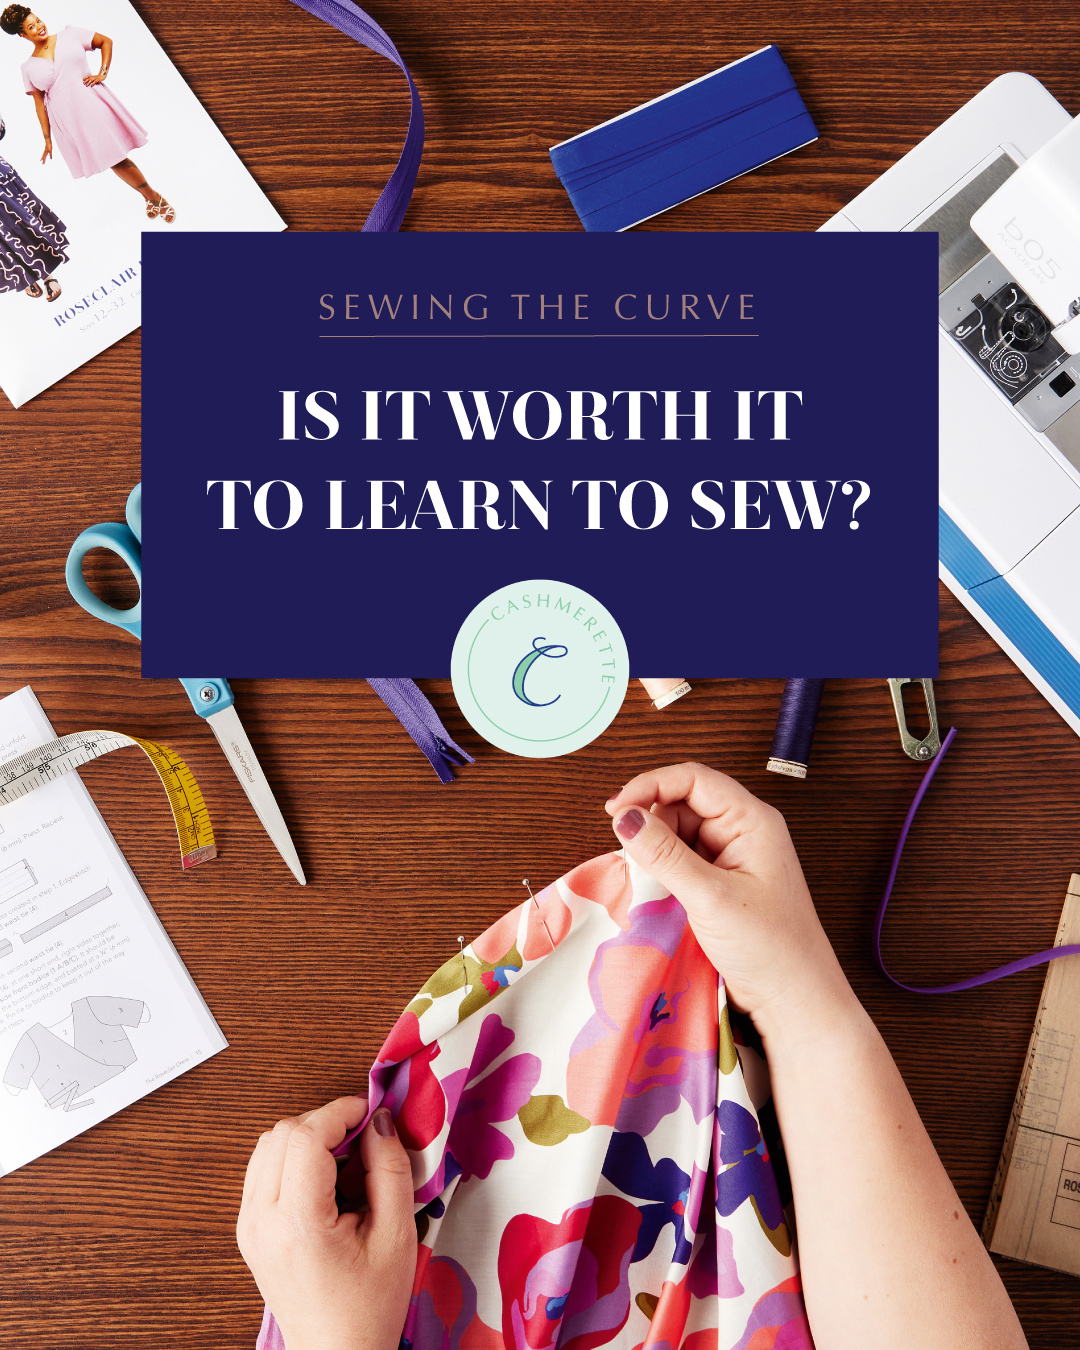 Lil Sew & Sew 100-Piece Sewing Kit